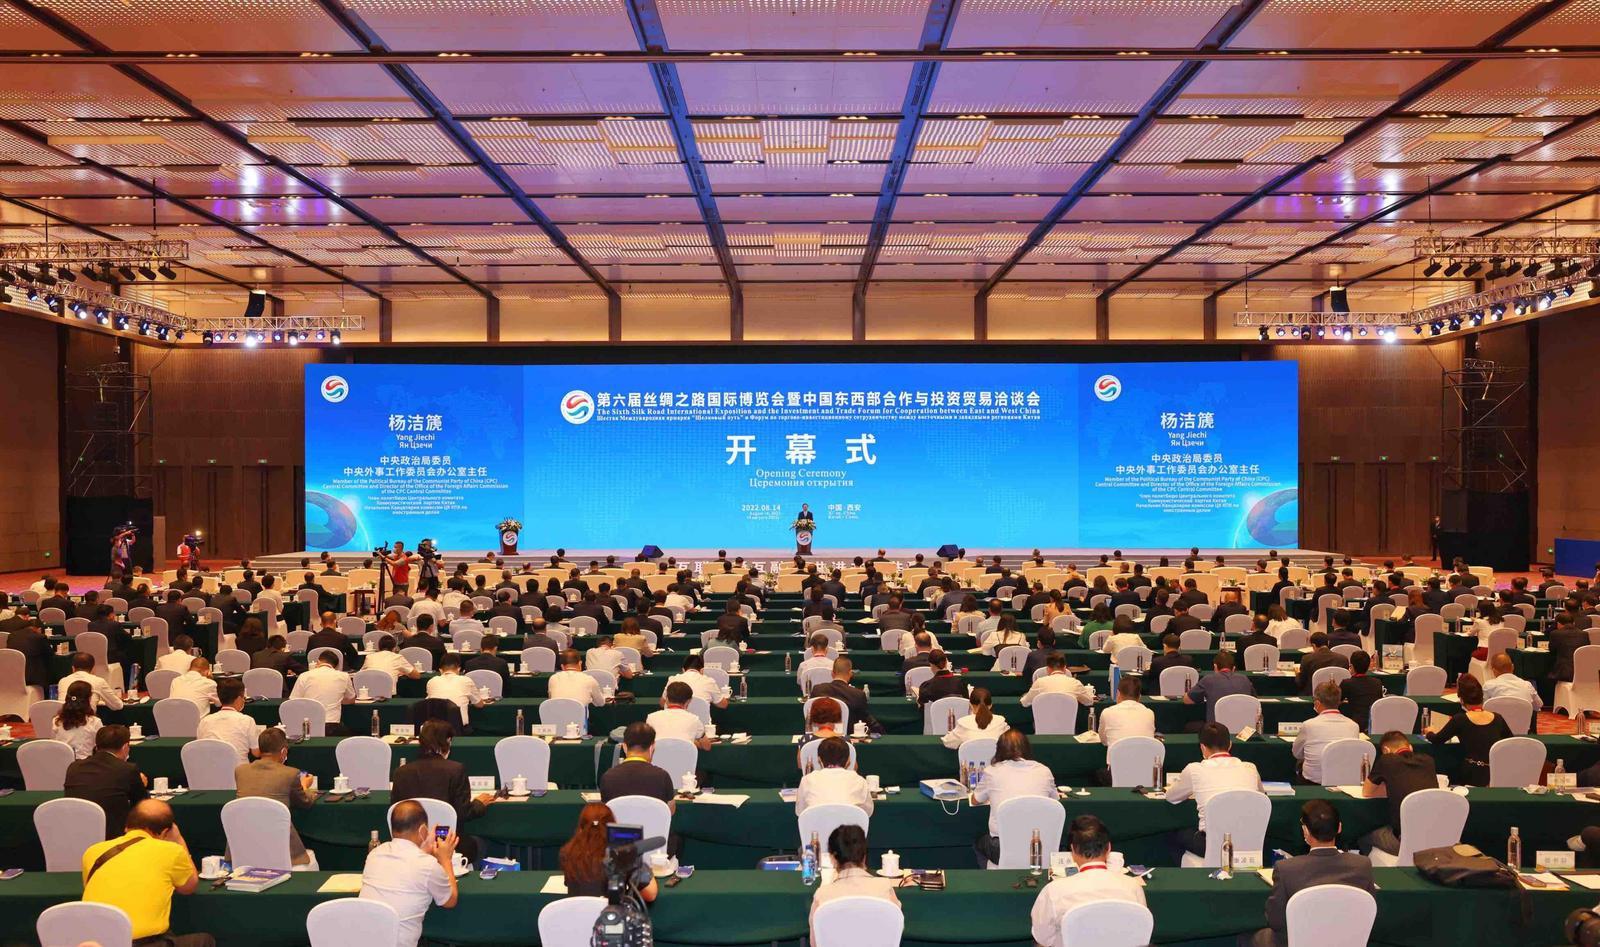 第六届丝绸之路国际博览会暨中国东西部合作与投资贸易洽谈会在西安隆重开幕。记者 张辰摄